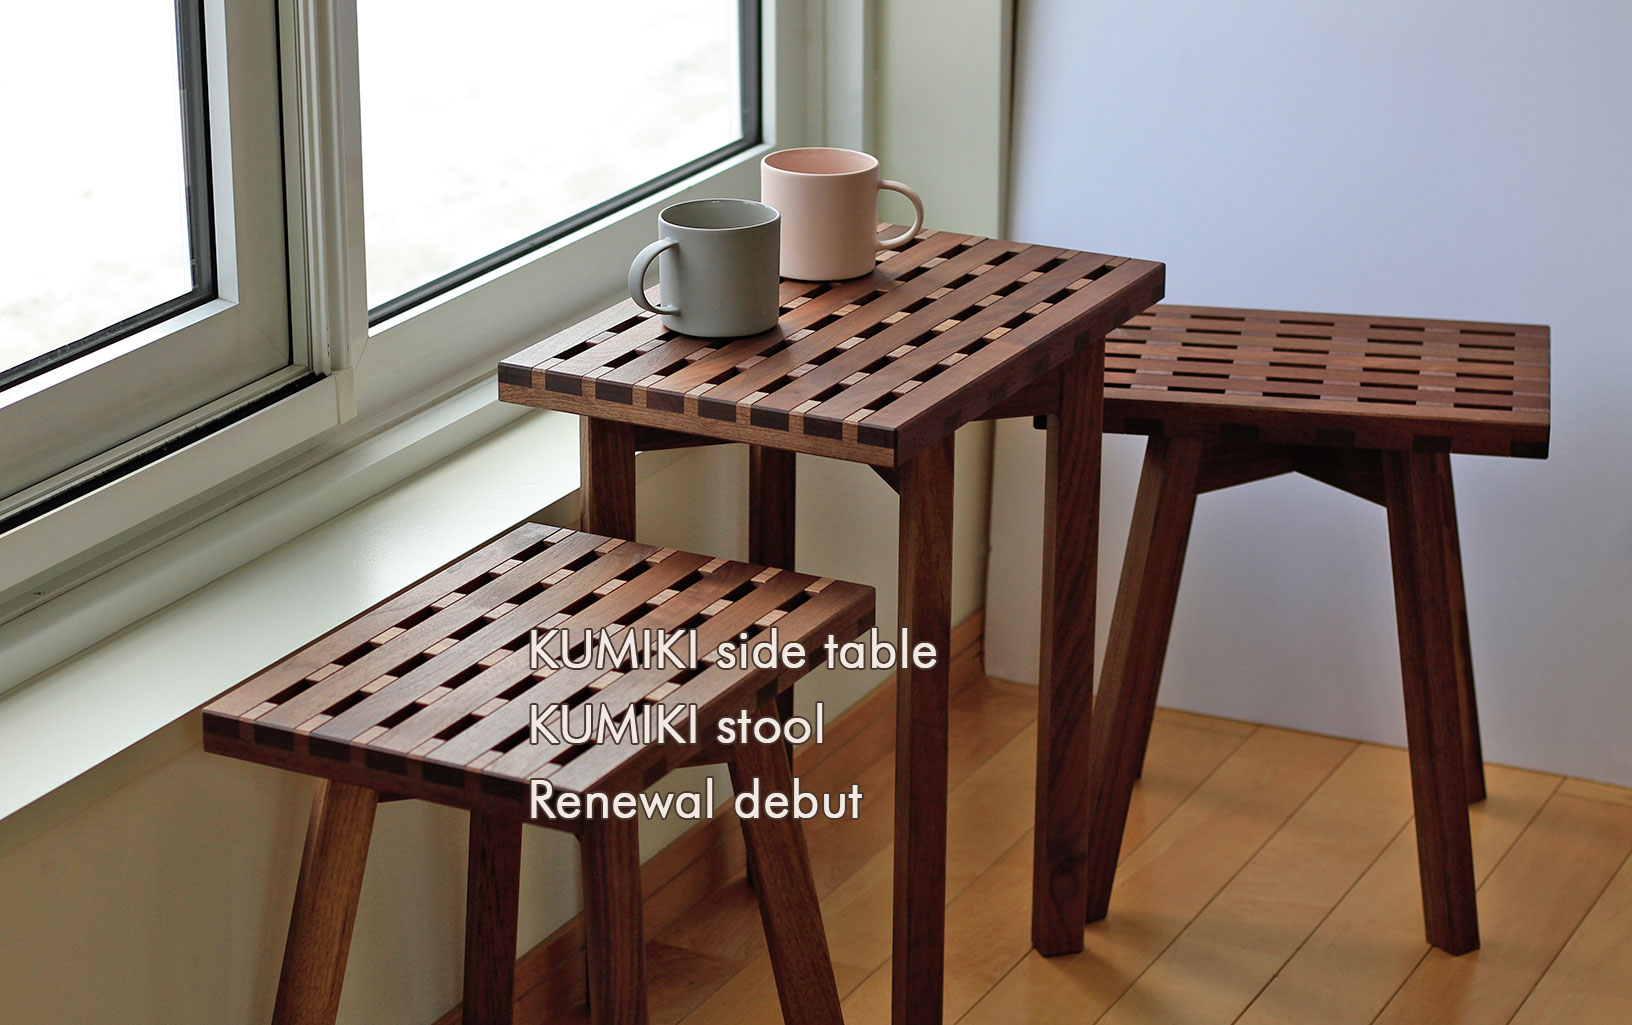 KUMIKI side table and KUMIKI stool